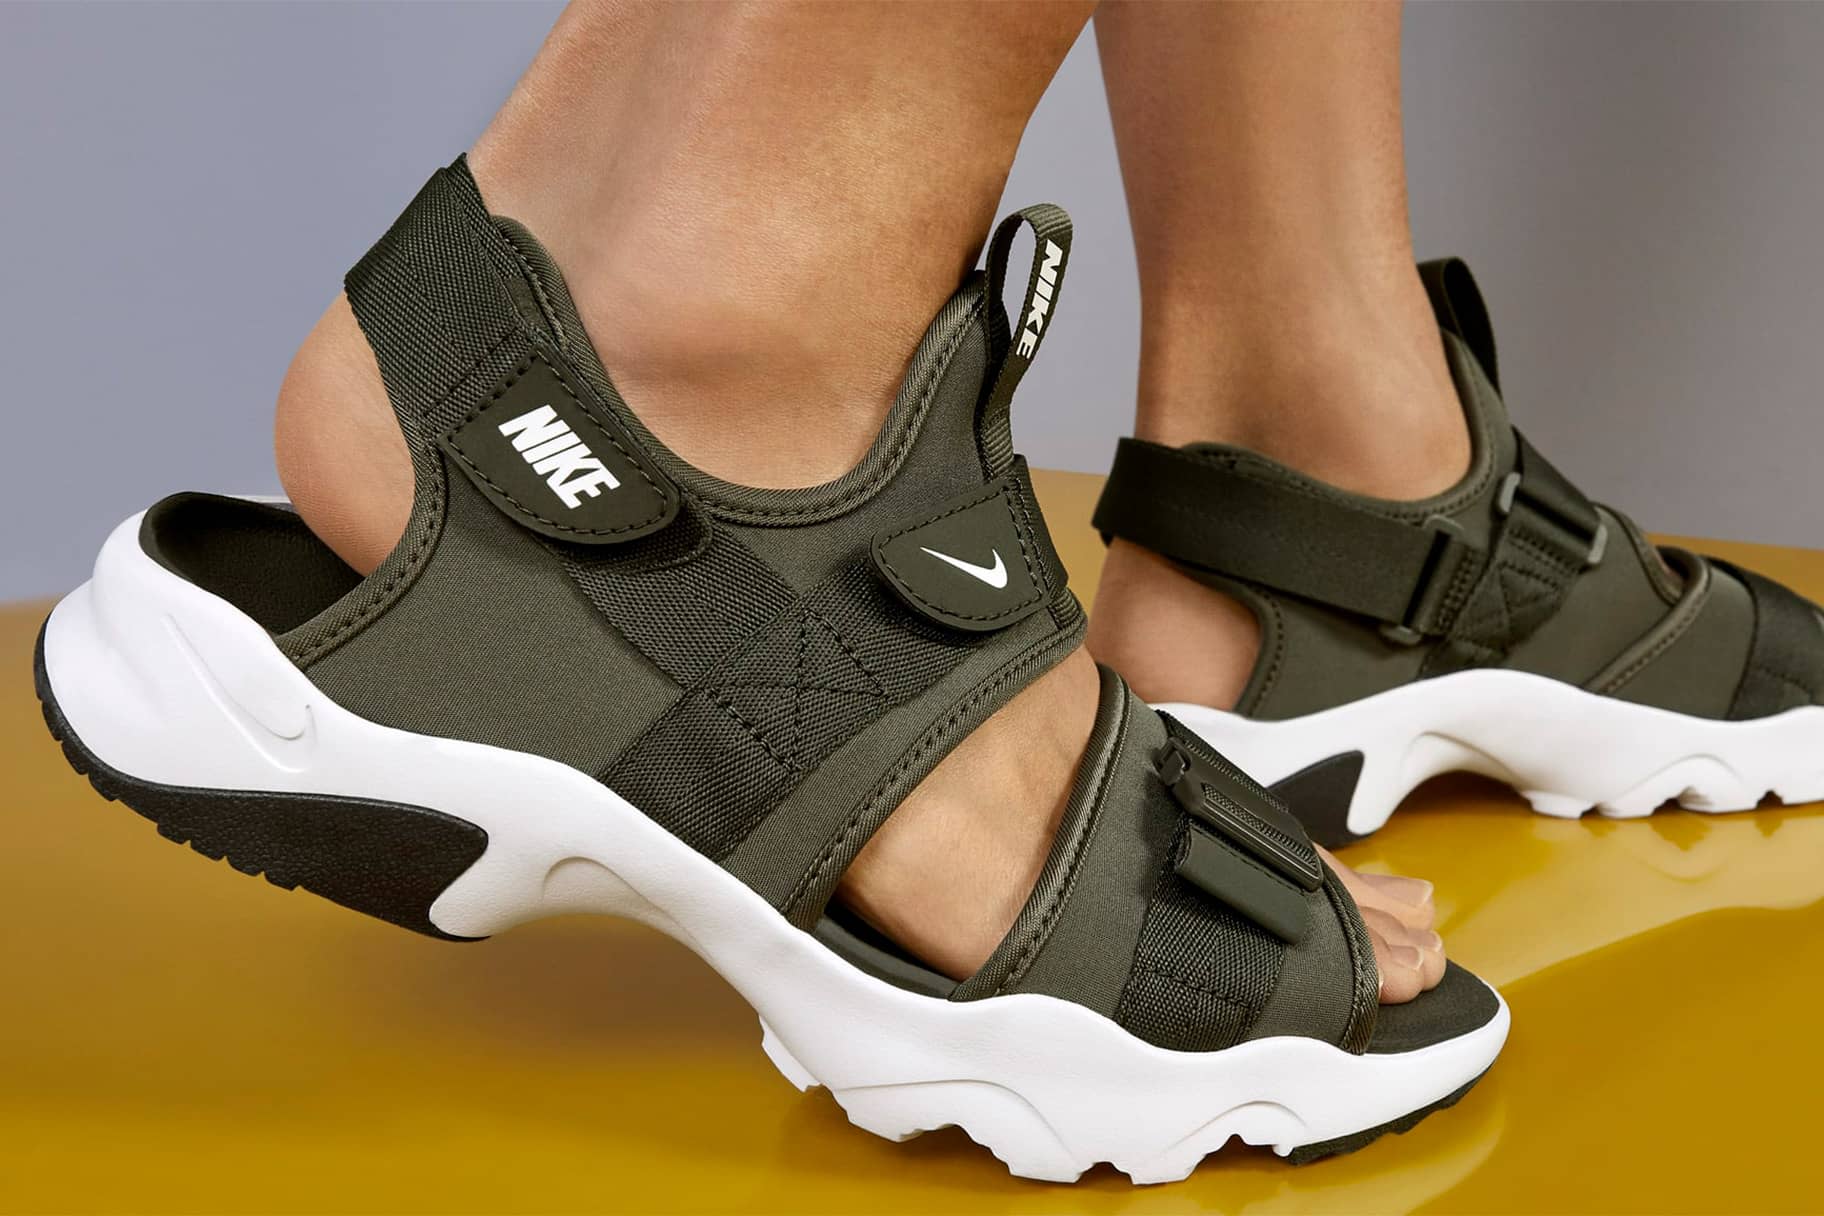 Nike's vier beste sandalen om te wandelen